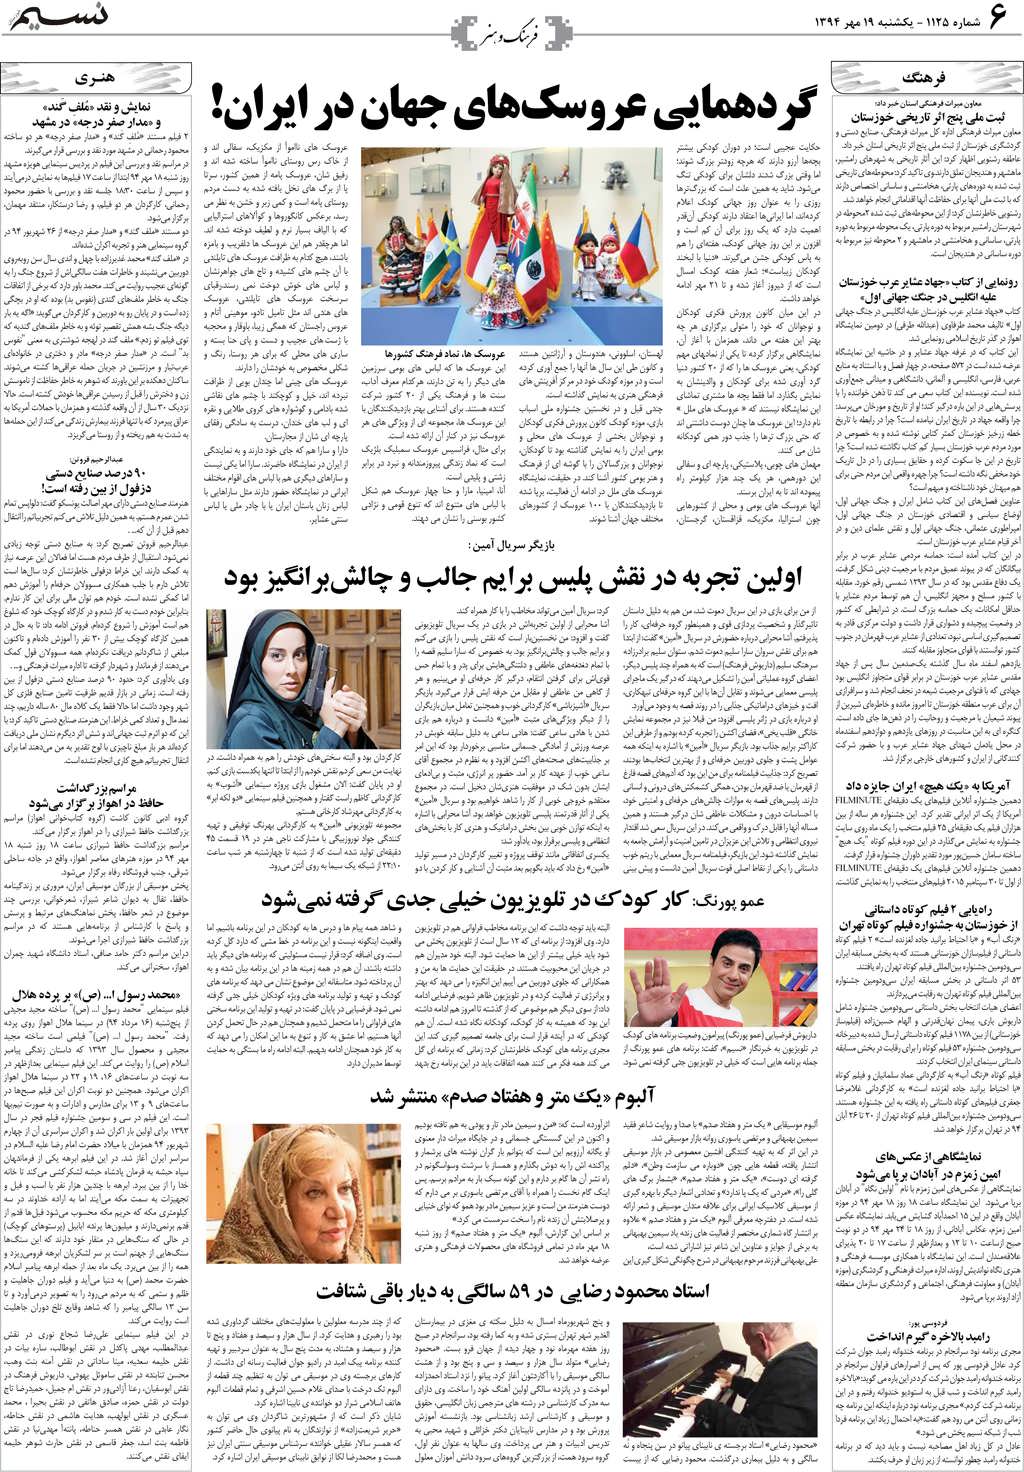 صفحه فرهنگ و هنر روزنامه نسیم شماره 1125